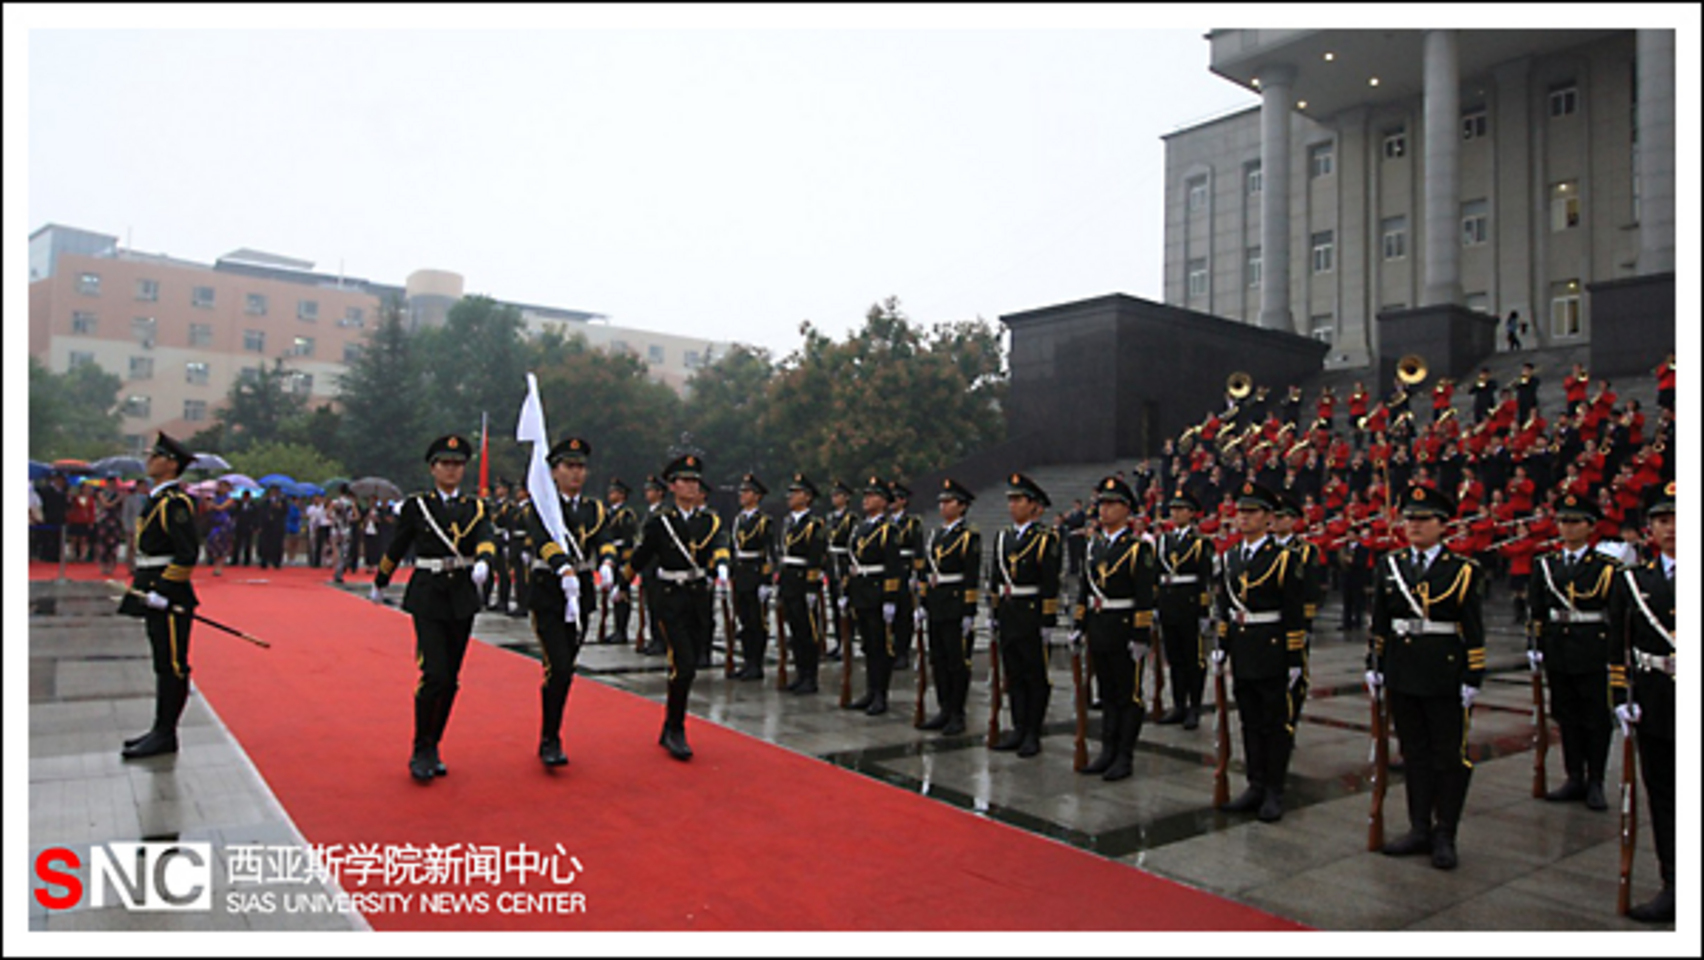 „IAUP“–ის შეხვედრა ჩინეთში